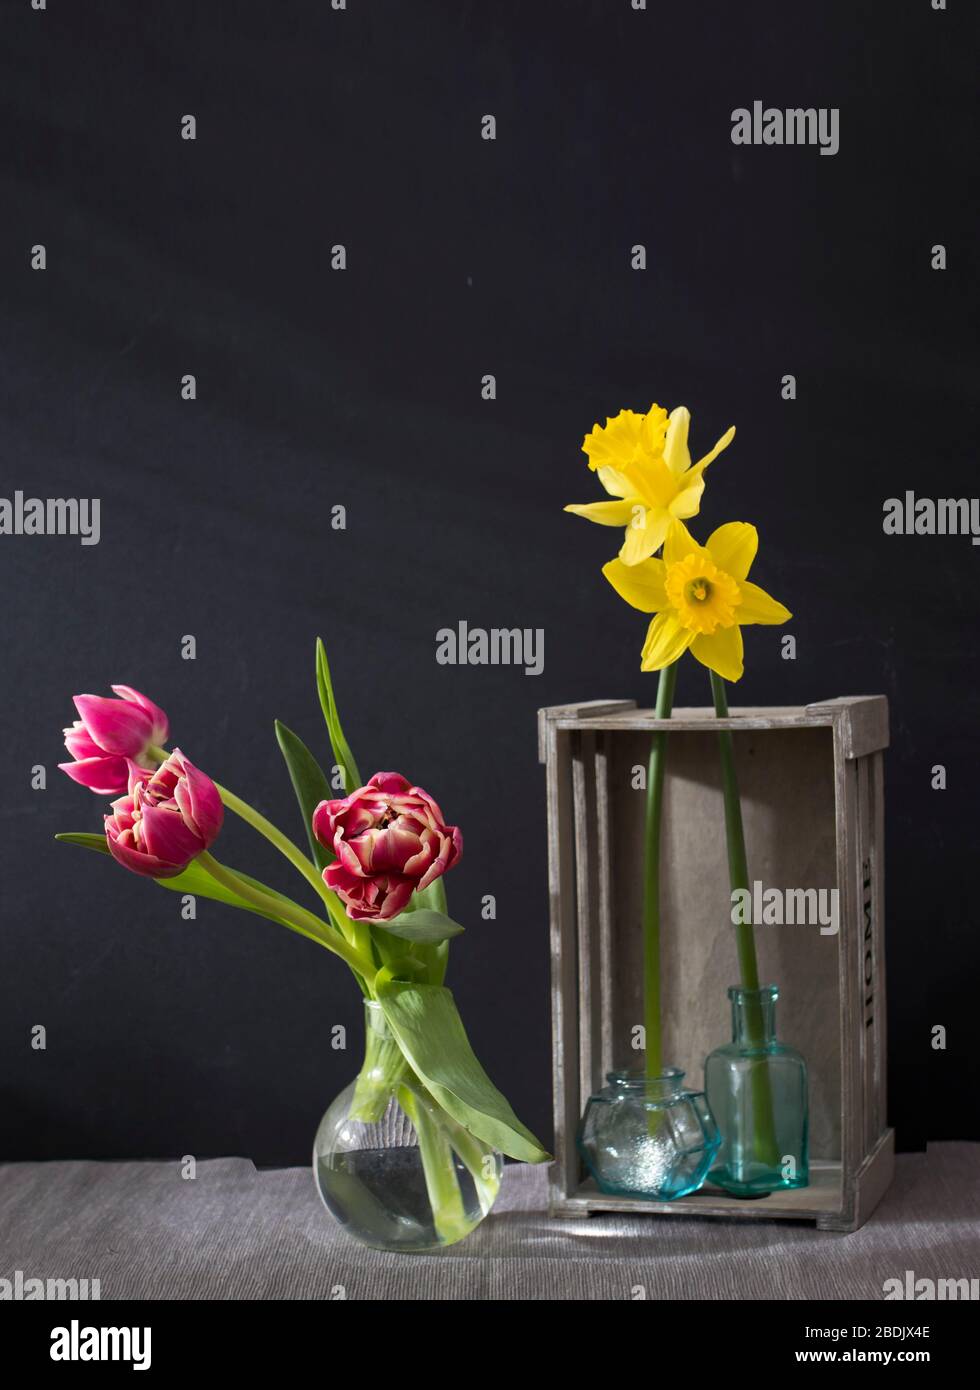 les narcissus dans une boîte en bois gris inversé décorative, trois tulipes dans le vase et vider de petites bouteilles sur un fond noir. Espace de copie Banque D'Images